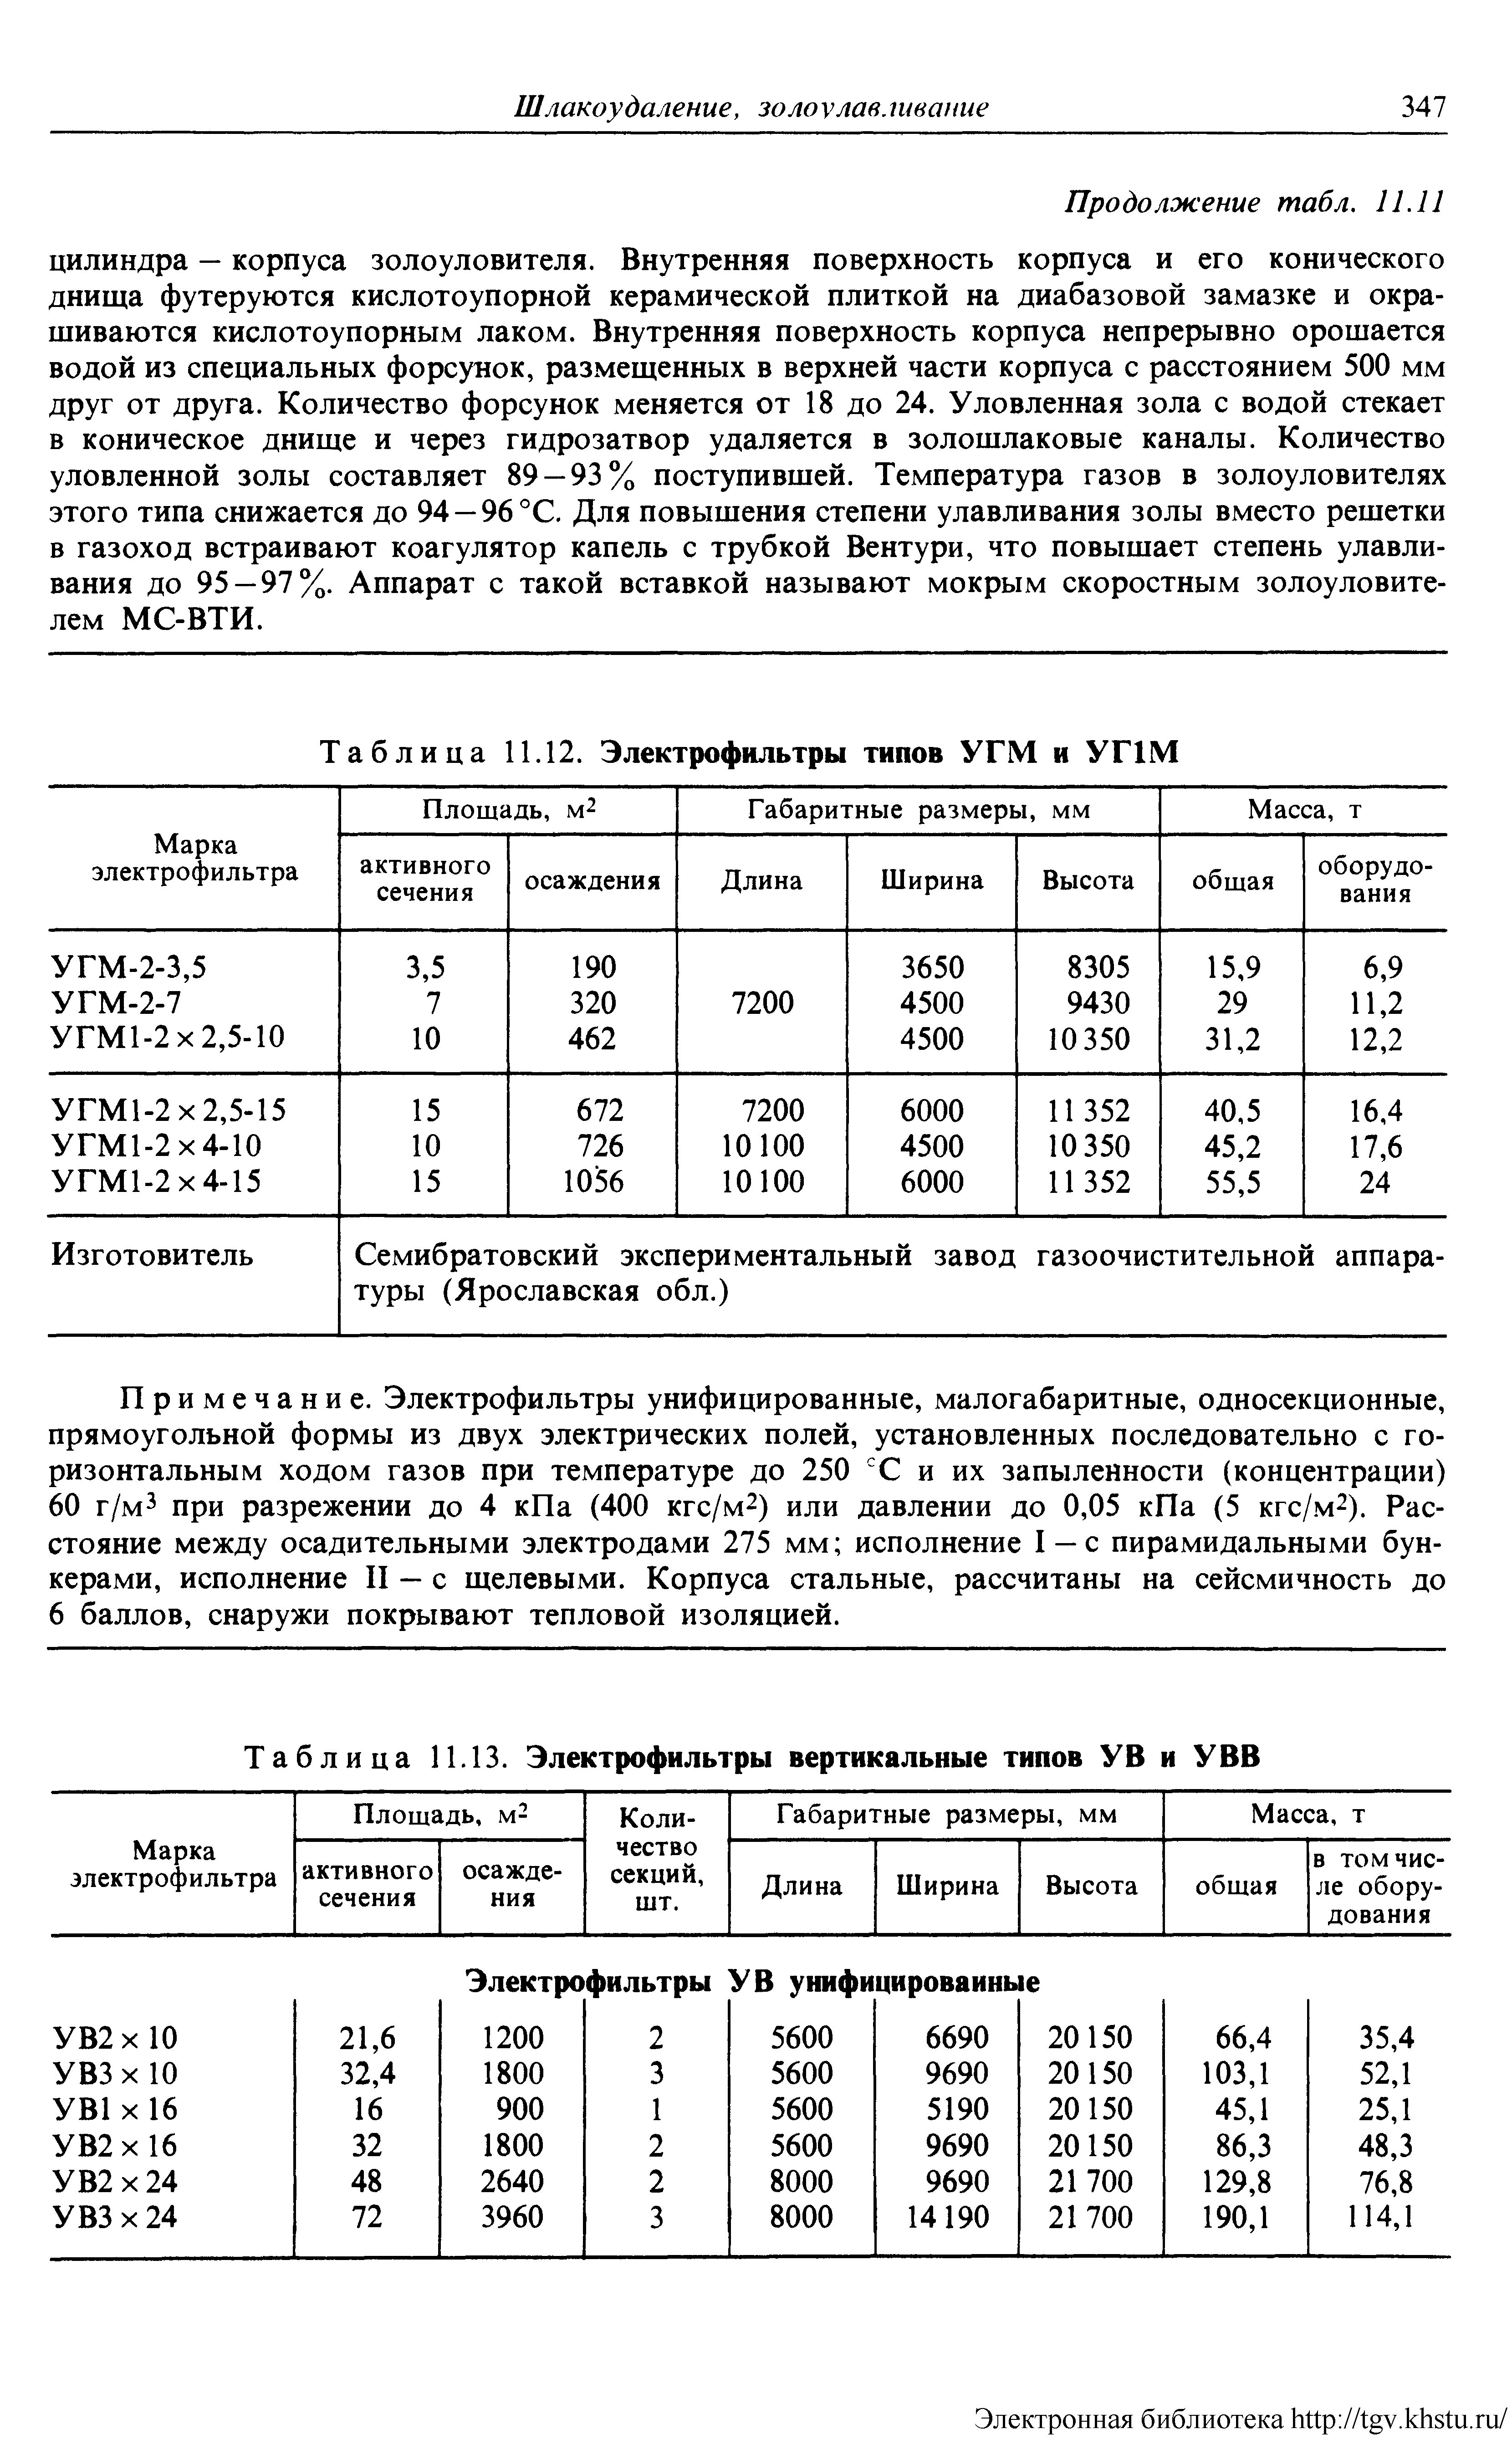 Таблица 11.13. Электрофильтры вертикальные типов У В и УВВ
